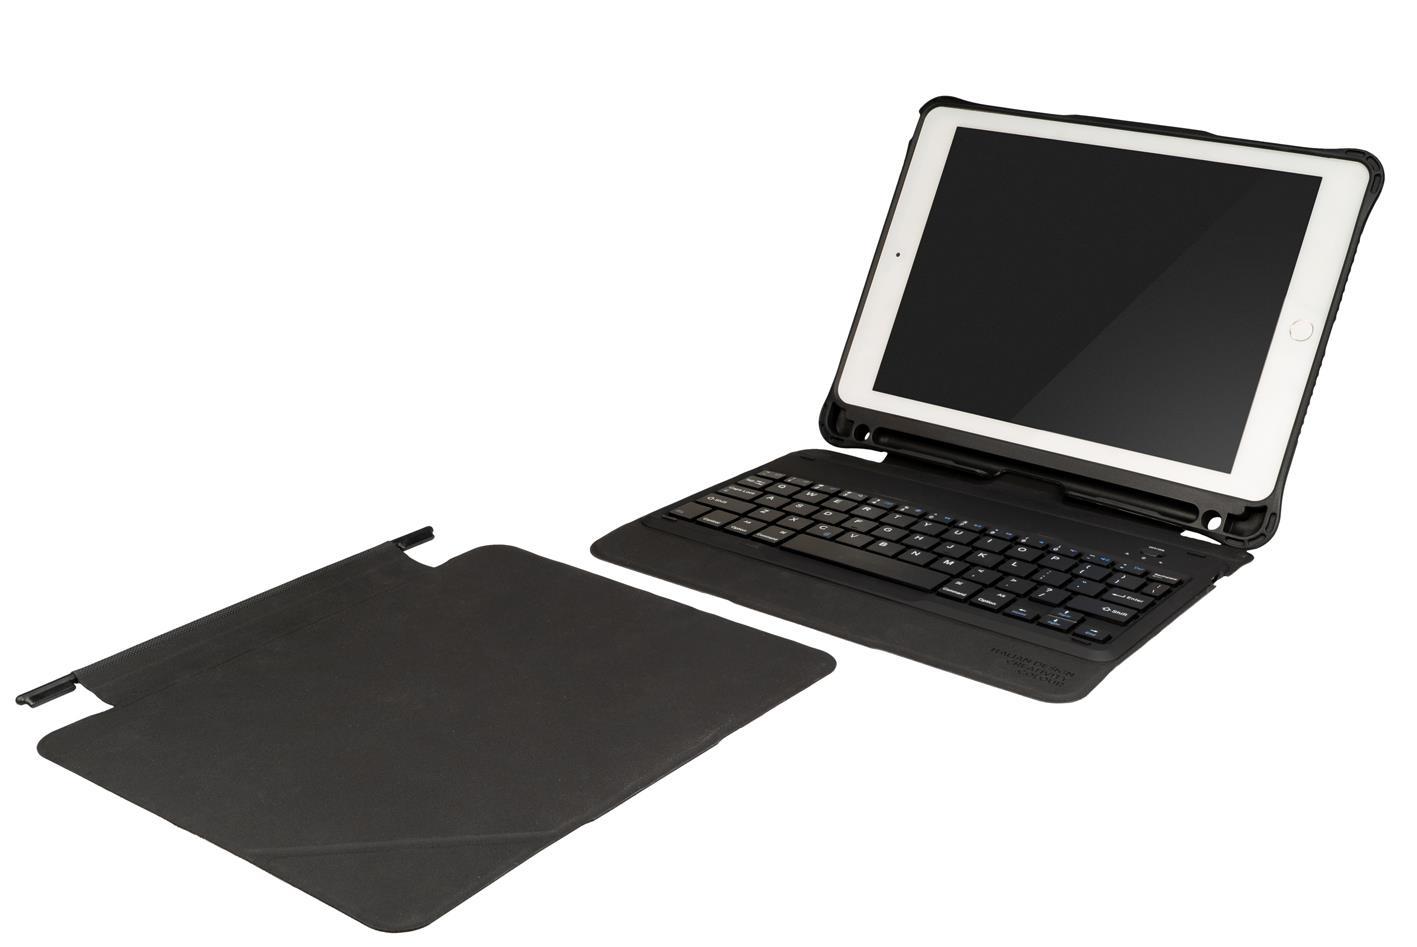 Tucano Tasto für Apple iPad 9.7, Pro 9.7, Air 2 Schutzcase mit Keyboard /abnehmbarem Deckel - Schwarz